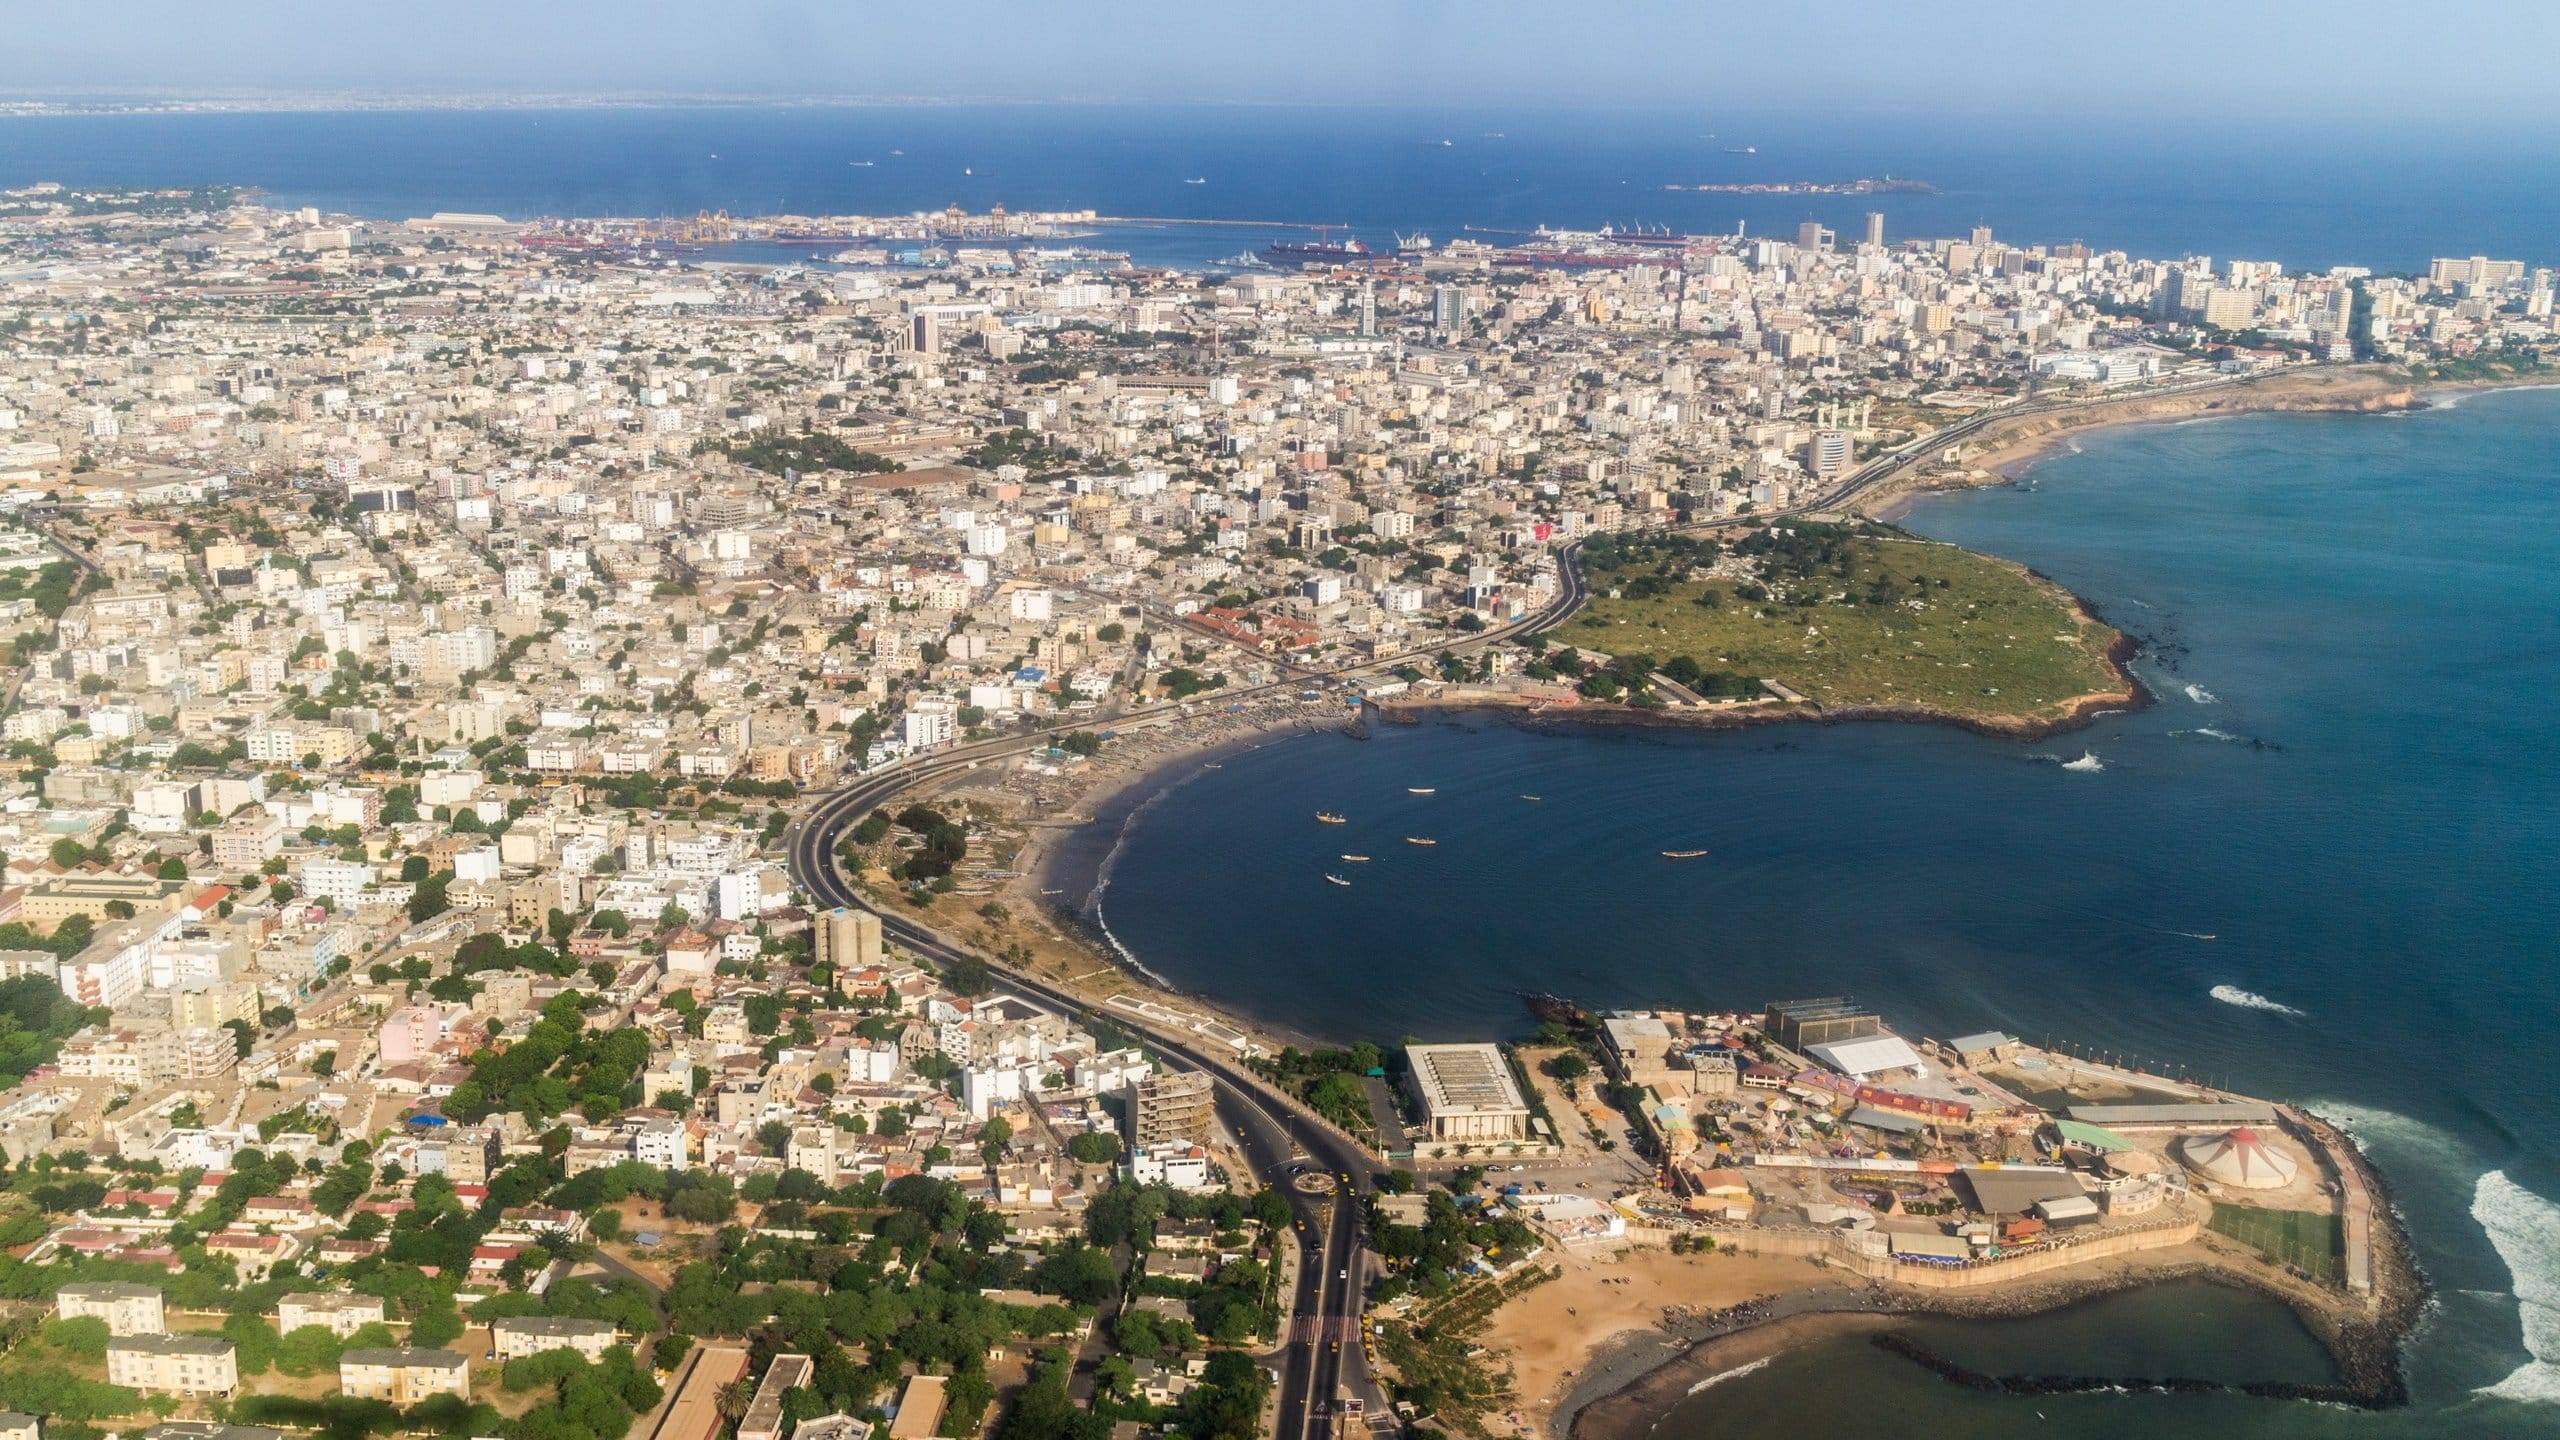 Vue aérienne de Dakar au Sénégal, haut lieu touristique sénégalais